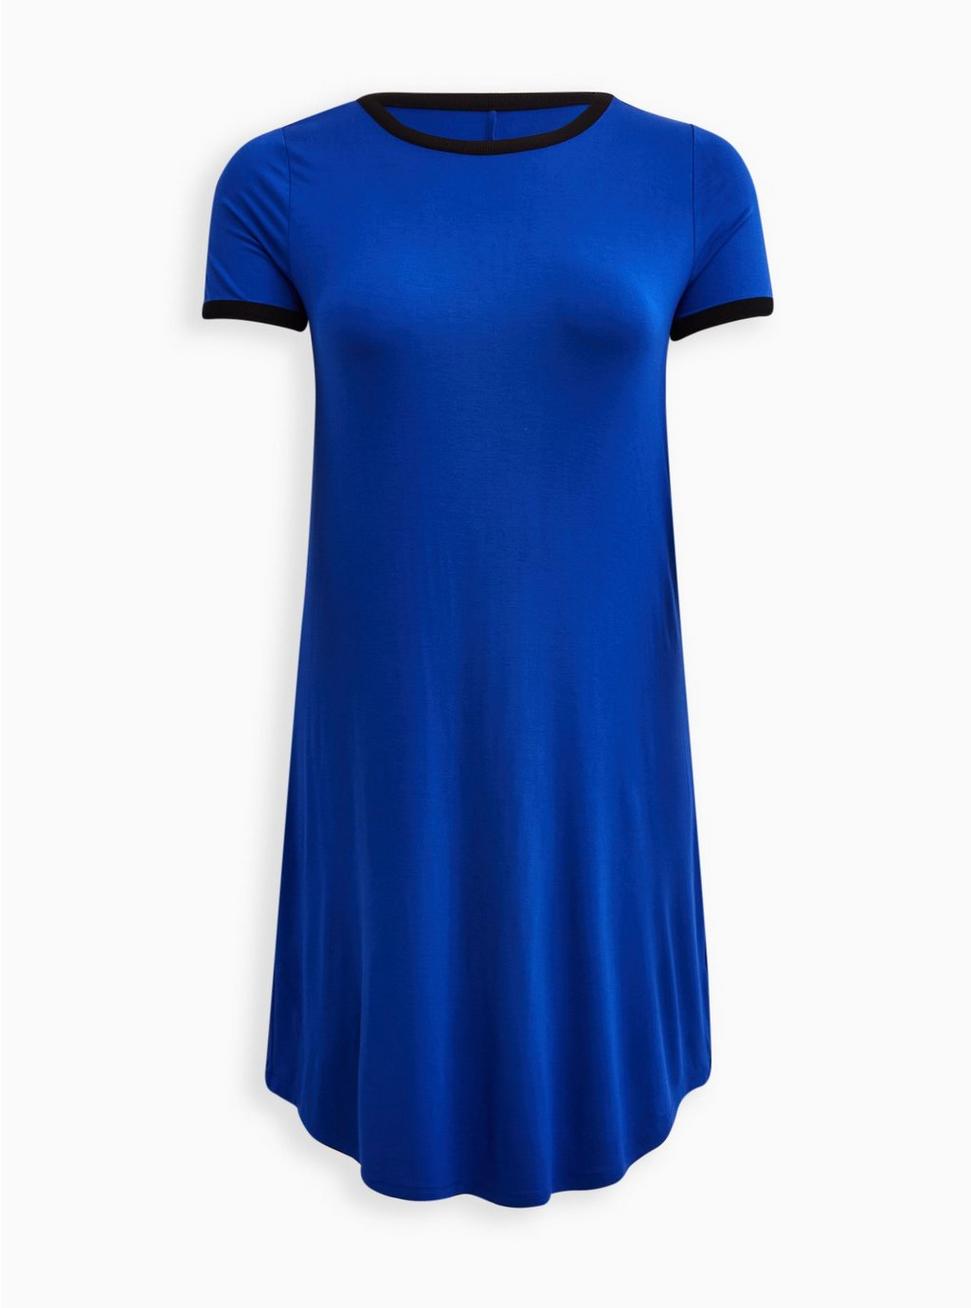 Mini Super Soft Tee Shirt Dress, BLUE, hi-res